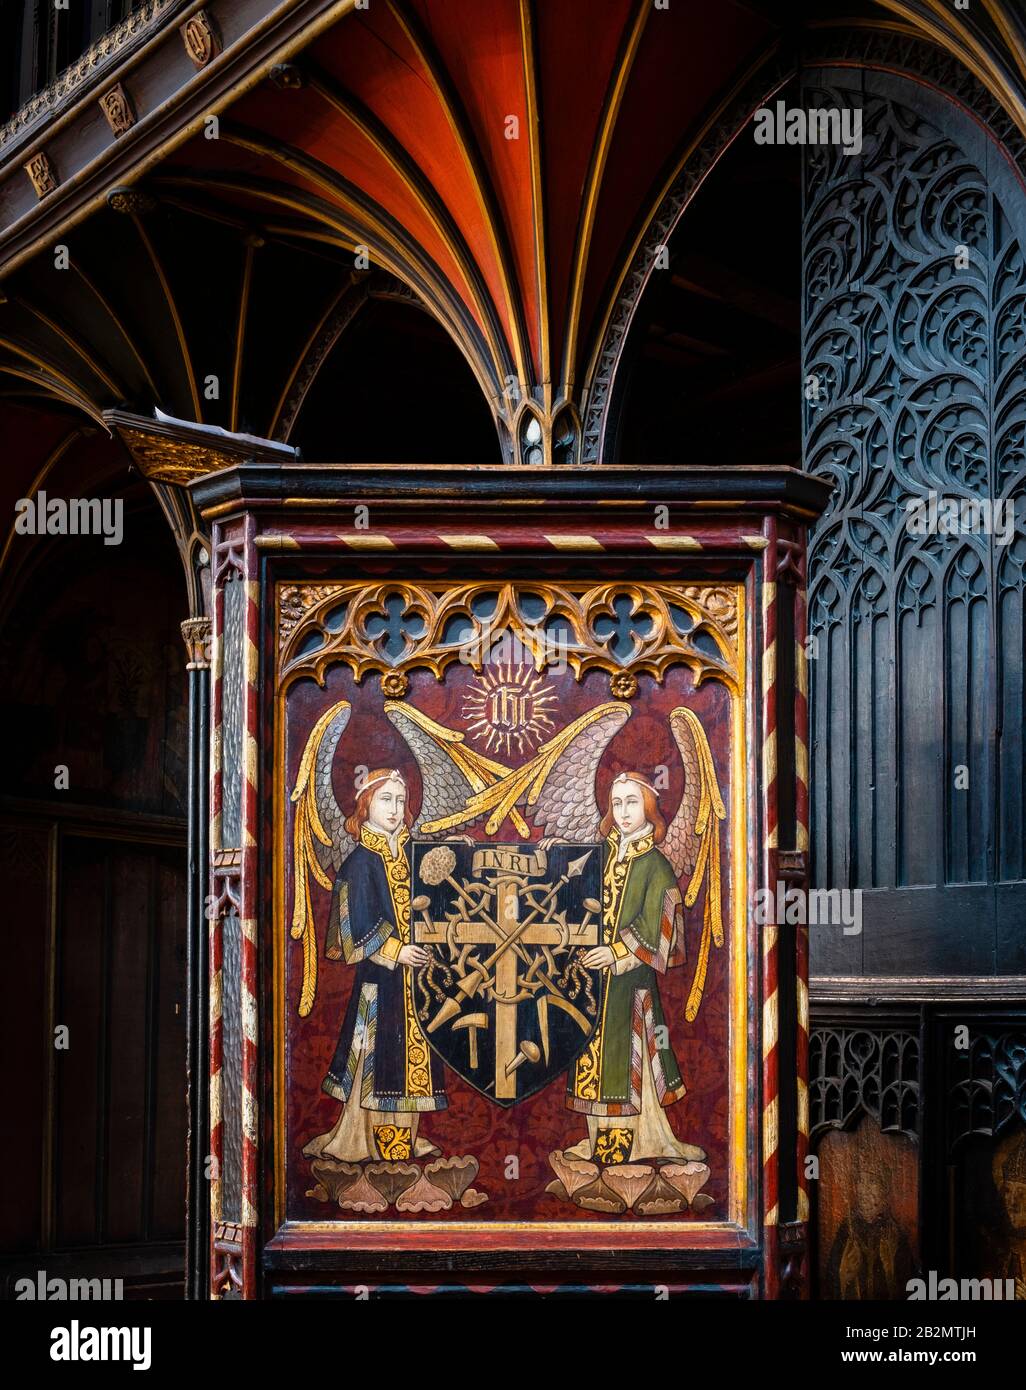 L'opera della chiesa cristiana sul pulpito e l'interno dell'abbazia di Hexham Foto Stock